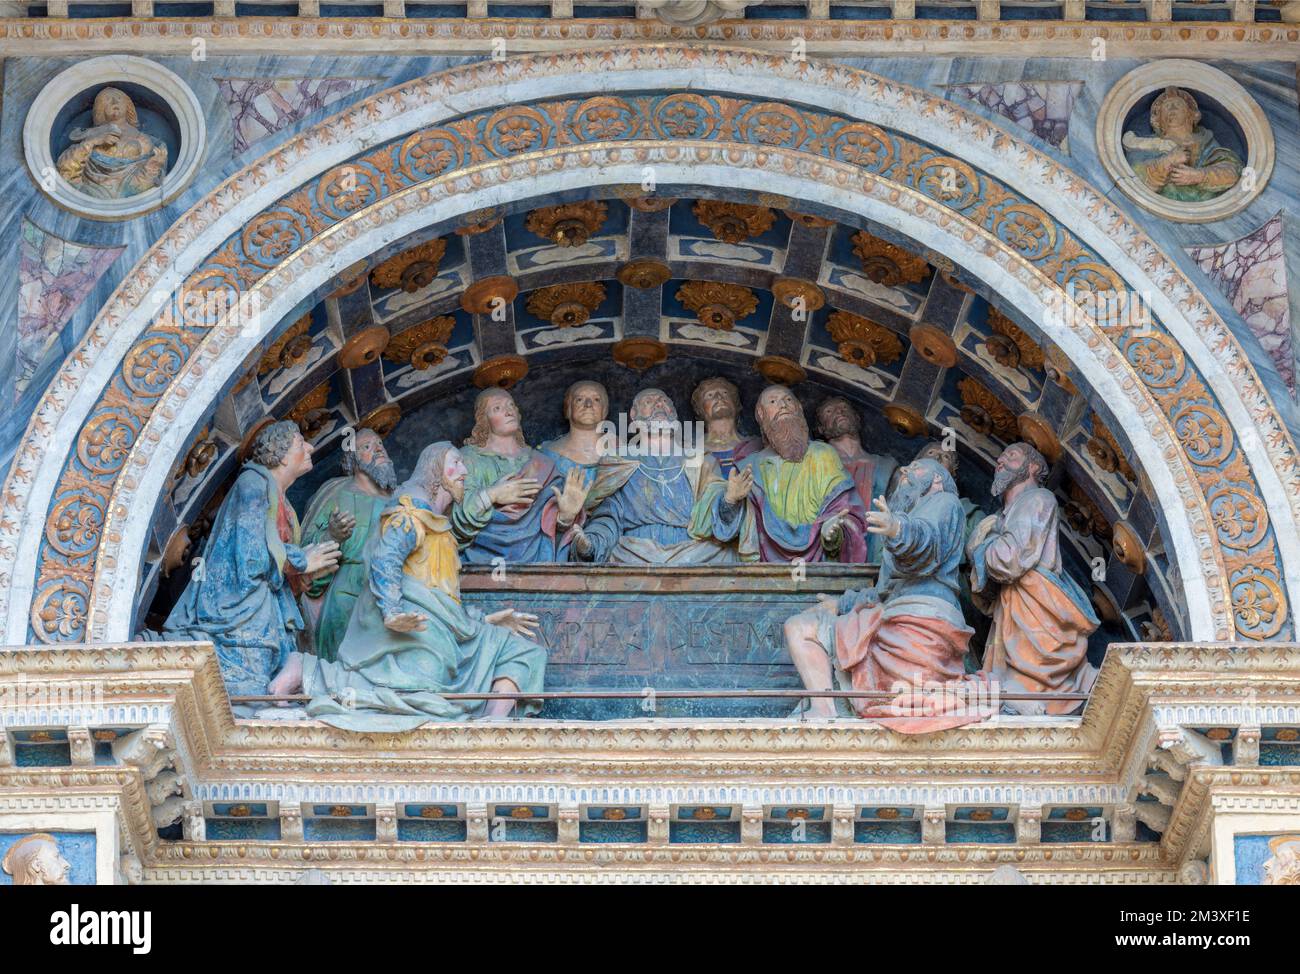 AOSTE, ITALIE - 14 JUILLET 2018 : la statue des apôtres à l'Assomption - détail de la façade de la cathédrale Santa Maria Assunta de 16. cent. Banque D'Images